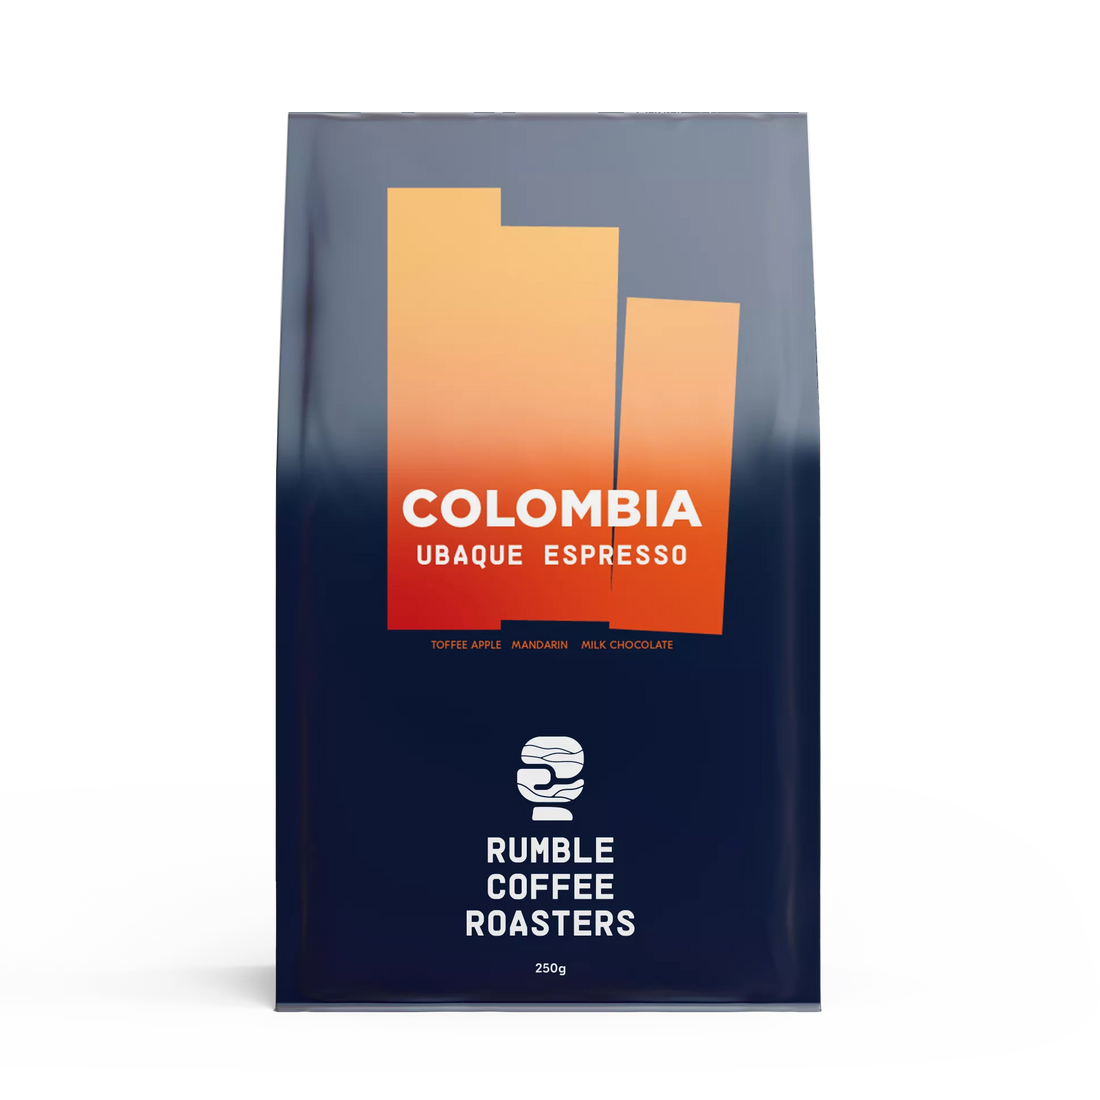 Colombia Ubaque Espresso | Rumble Coffee Roasters Kensington